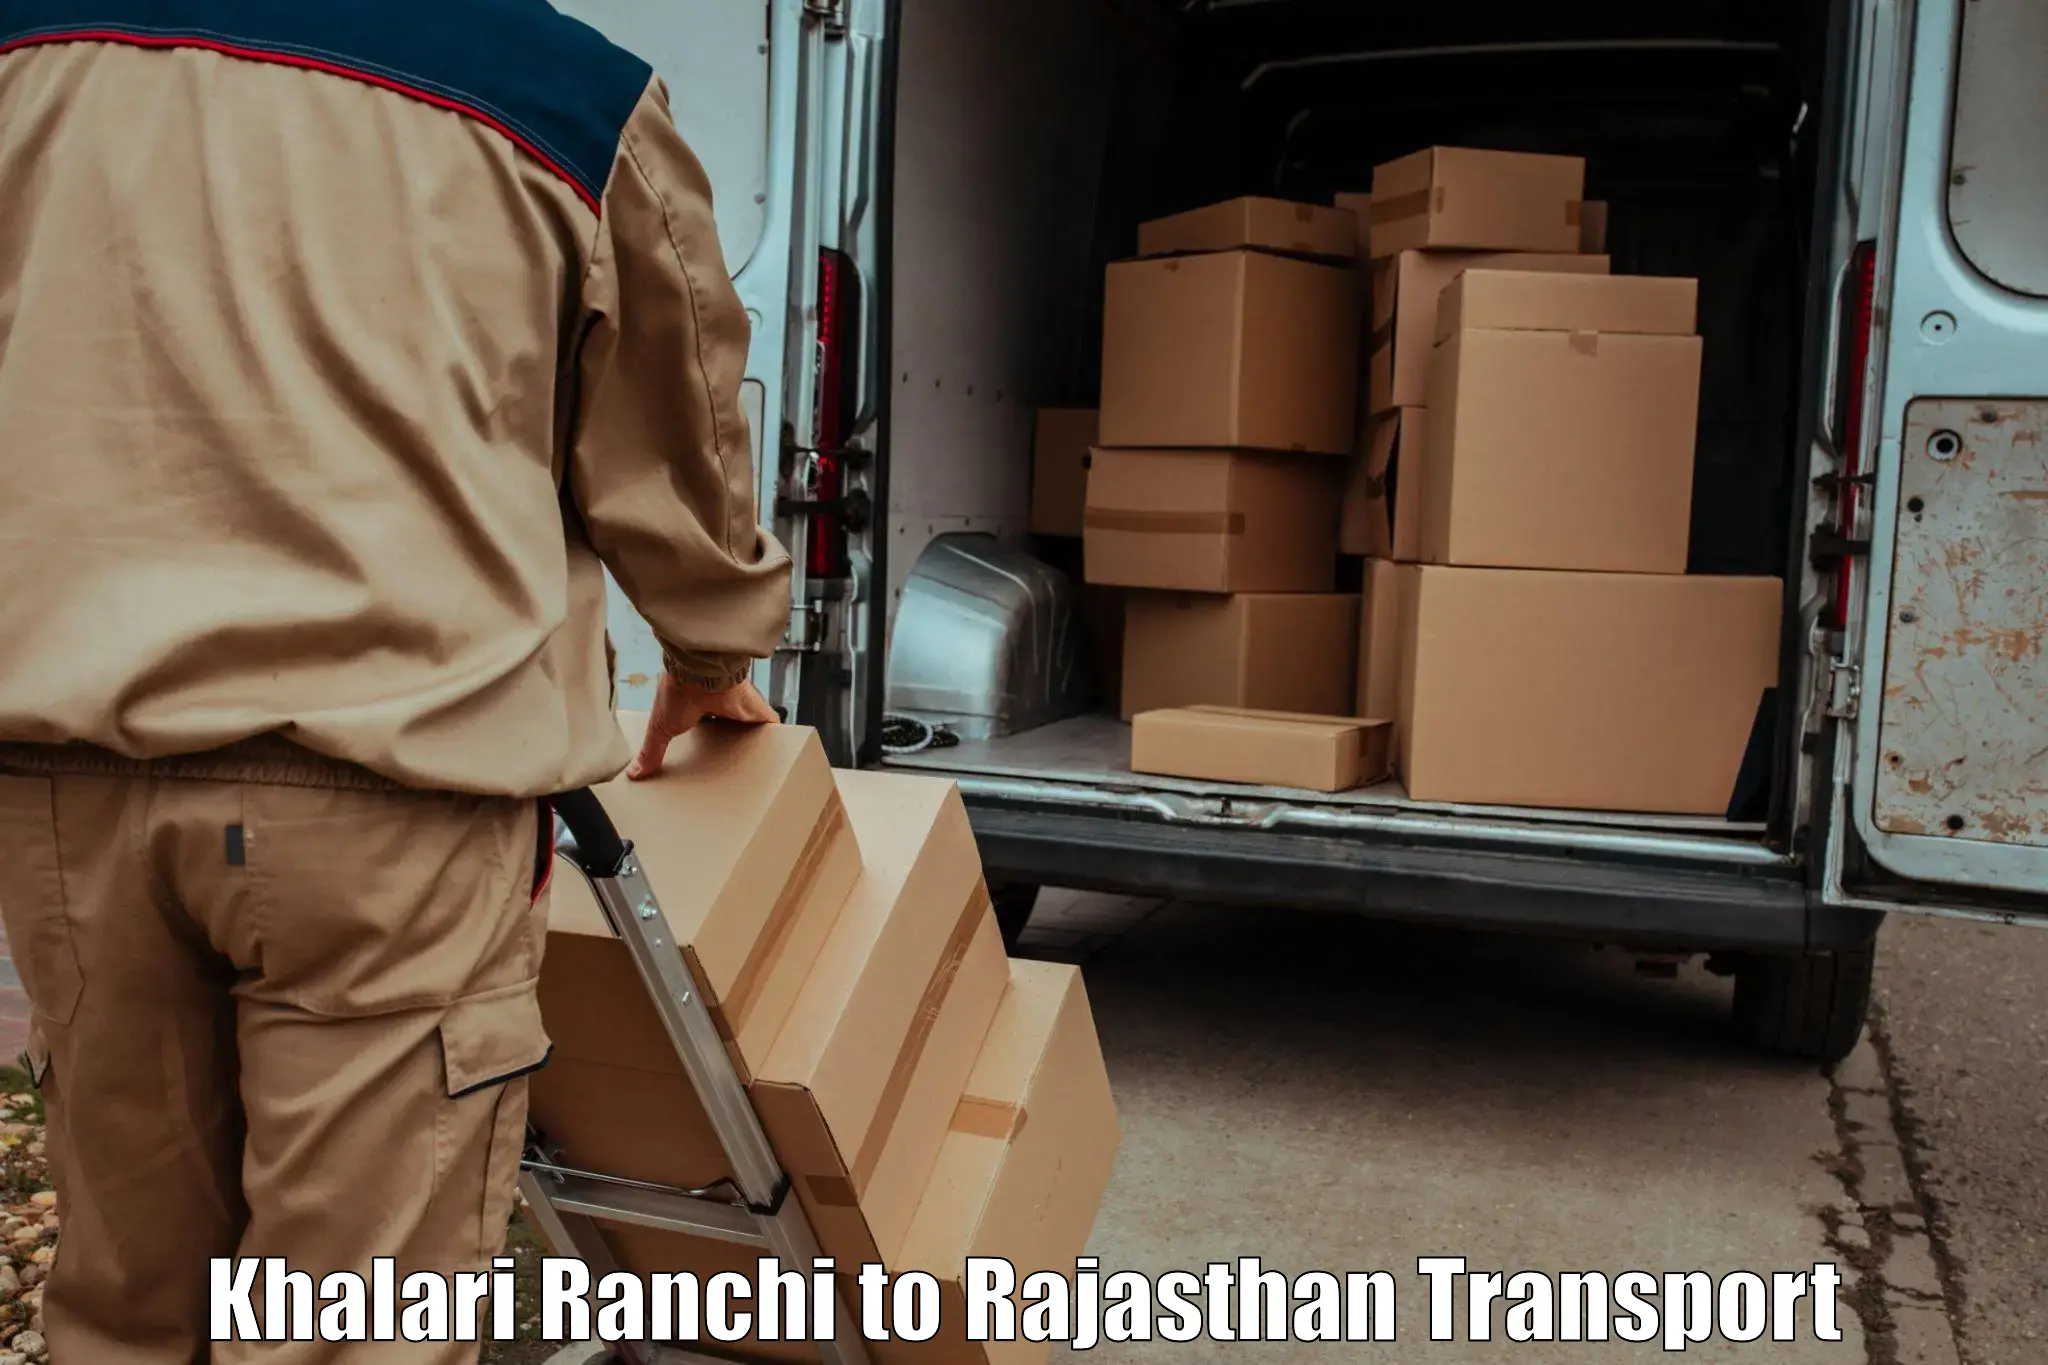 Cargo transport services Khalari Ranchi to Pindwara